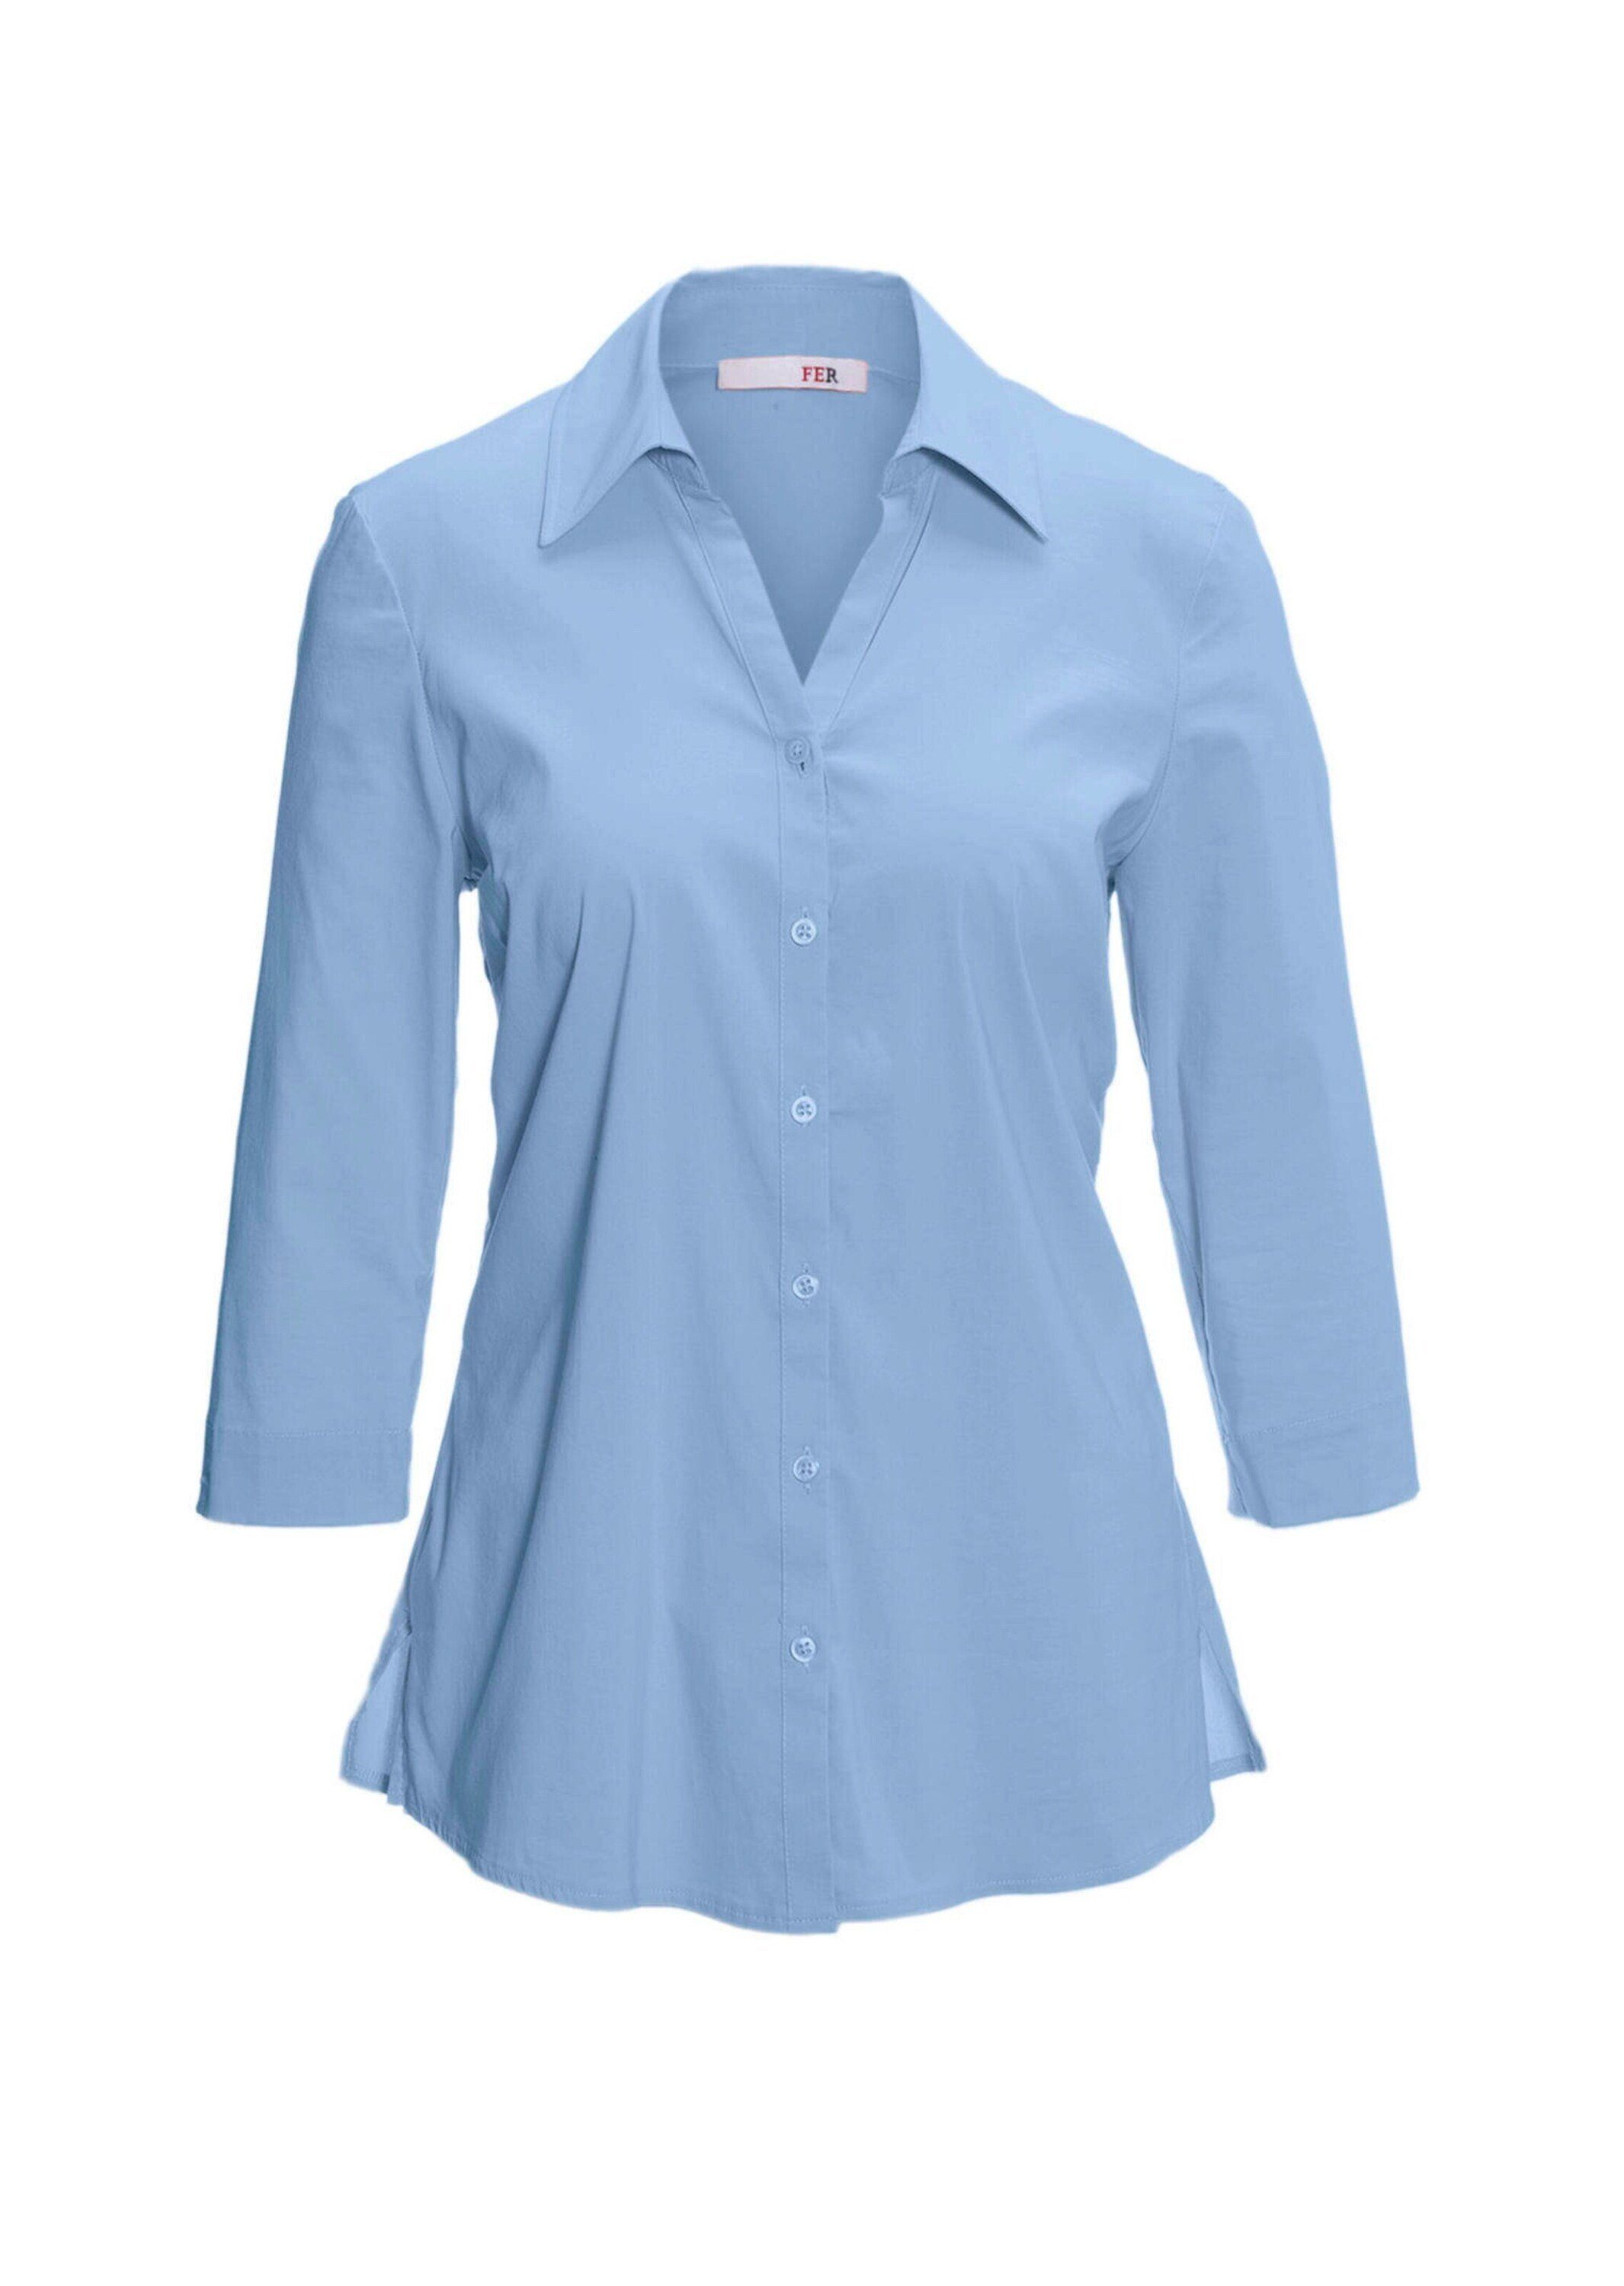 GOLDNER Hemdbluse Kurzgröße: Stretchbequeme Bluse mit Baumwolle bleu